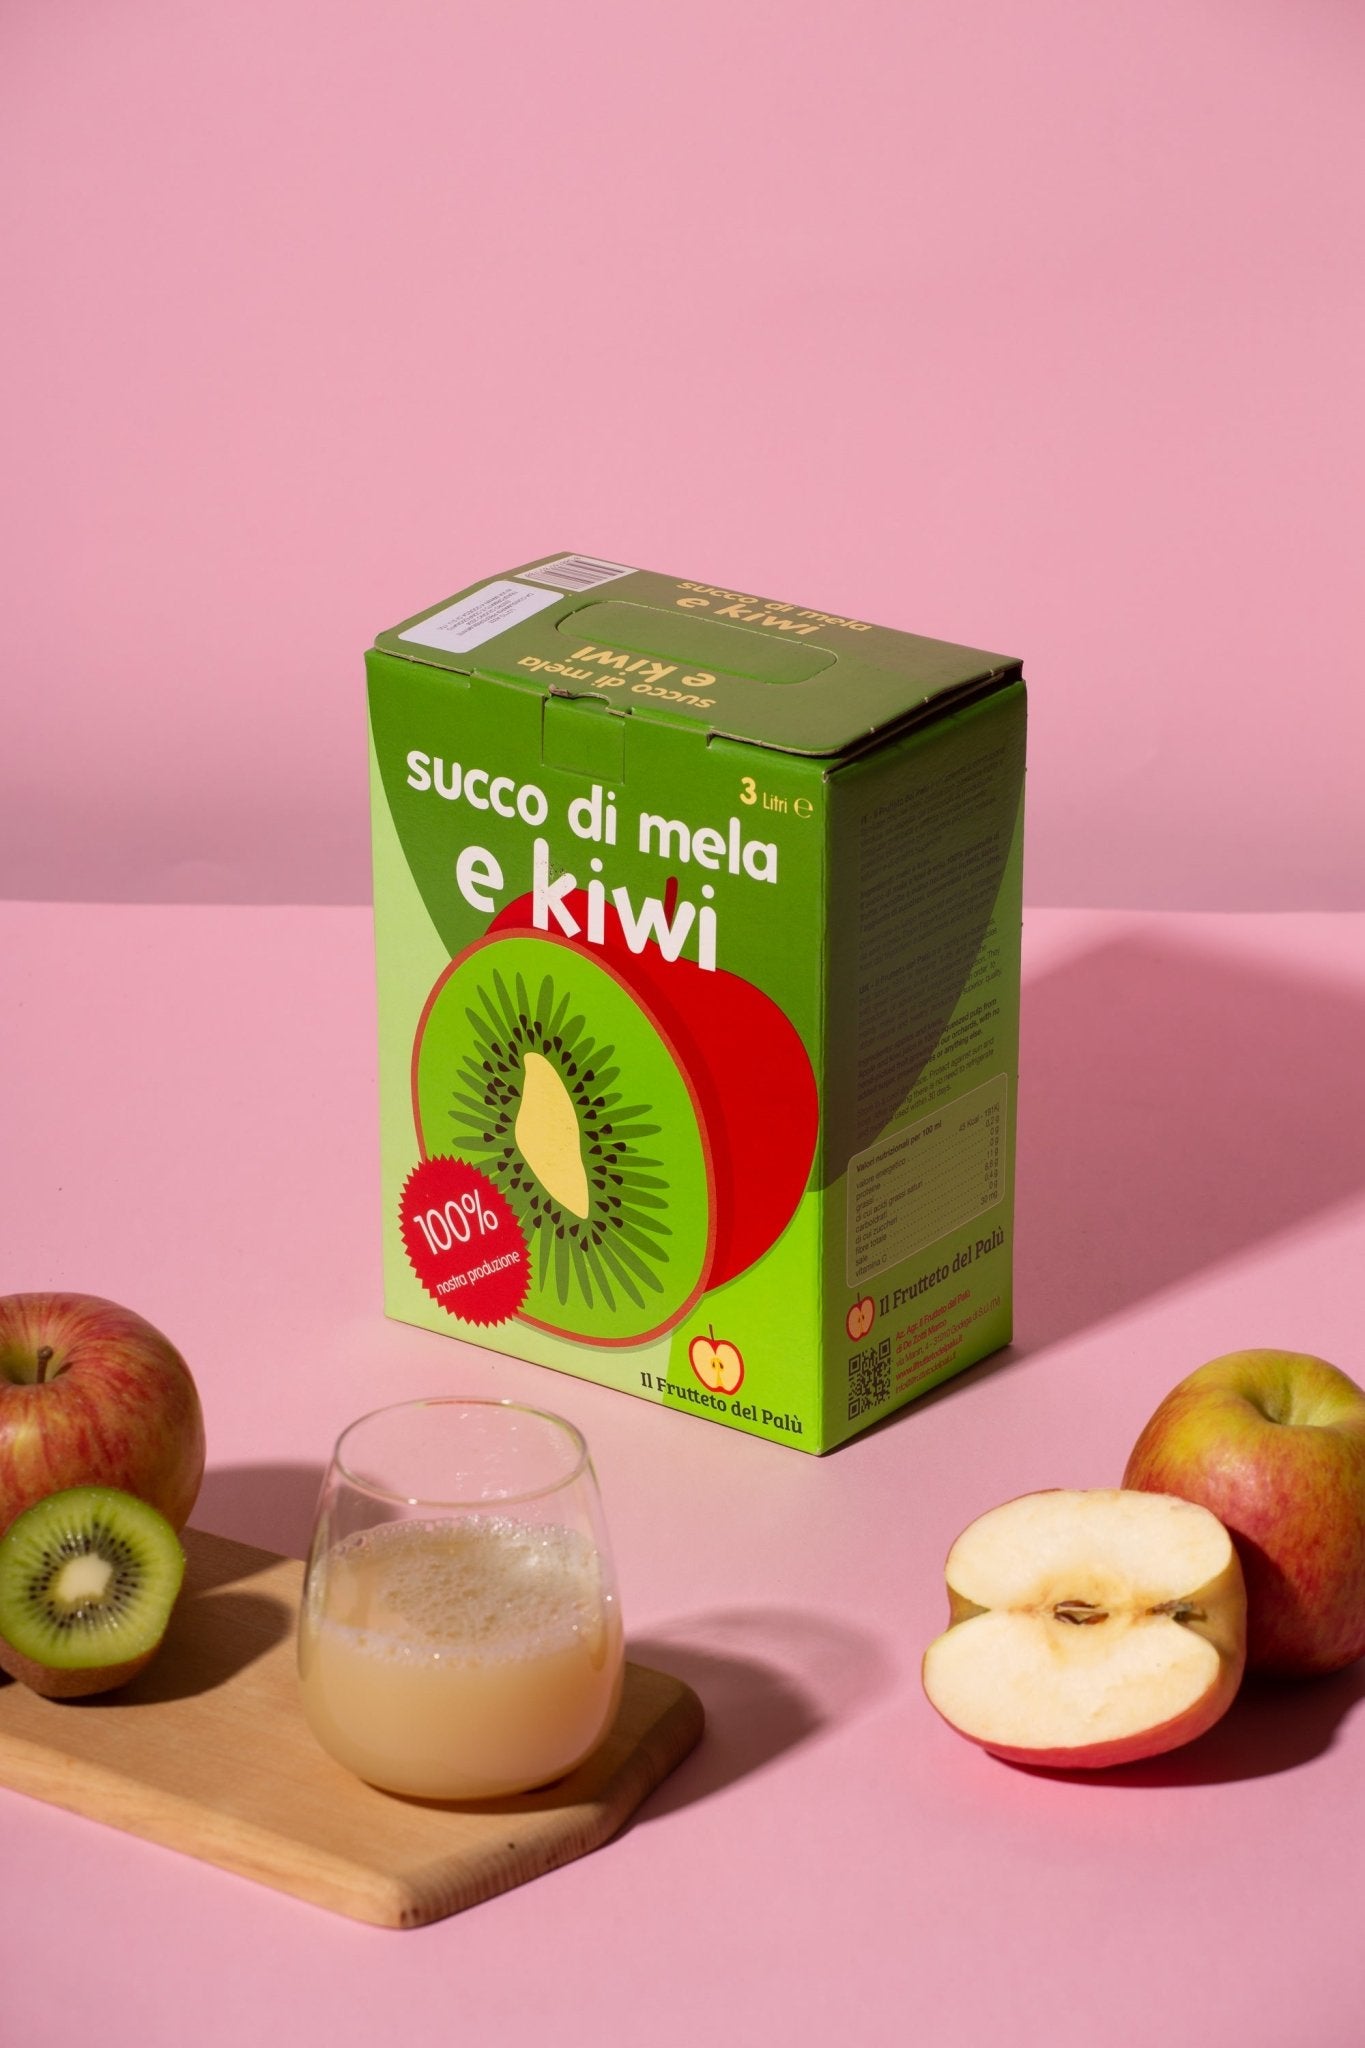 Succo di Mela e Kiwi - Il Frutteto del Palù